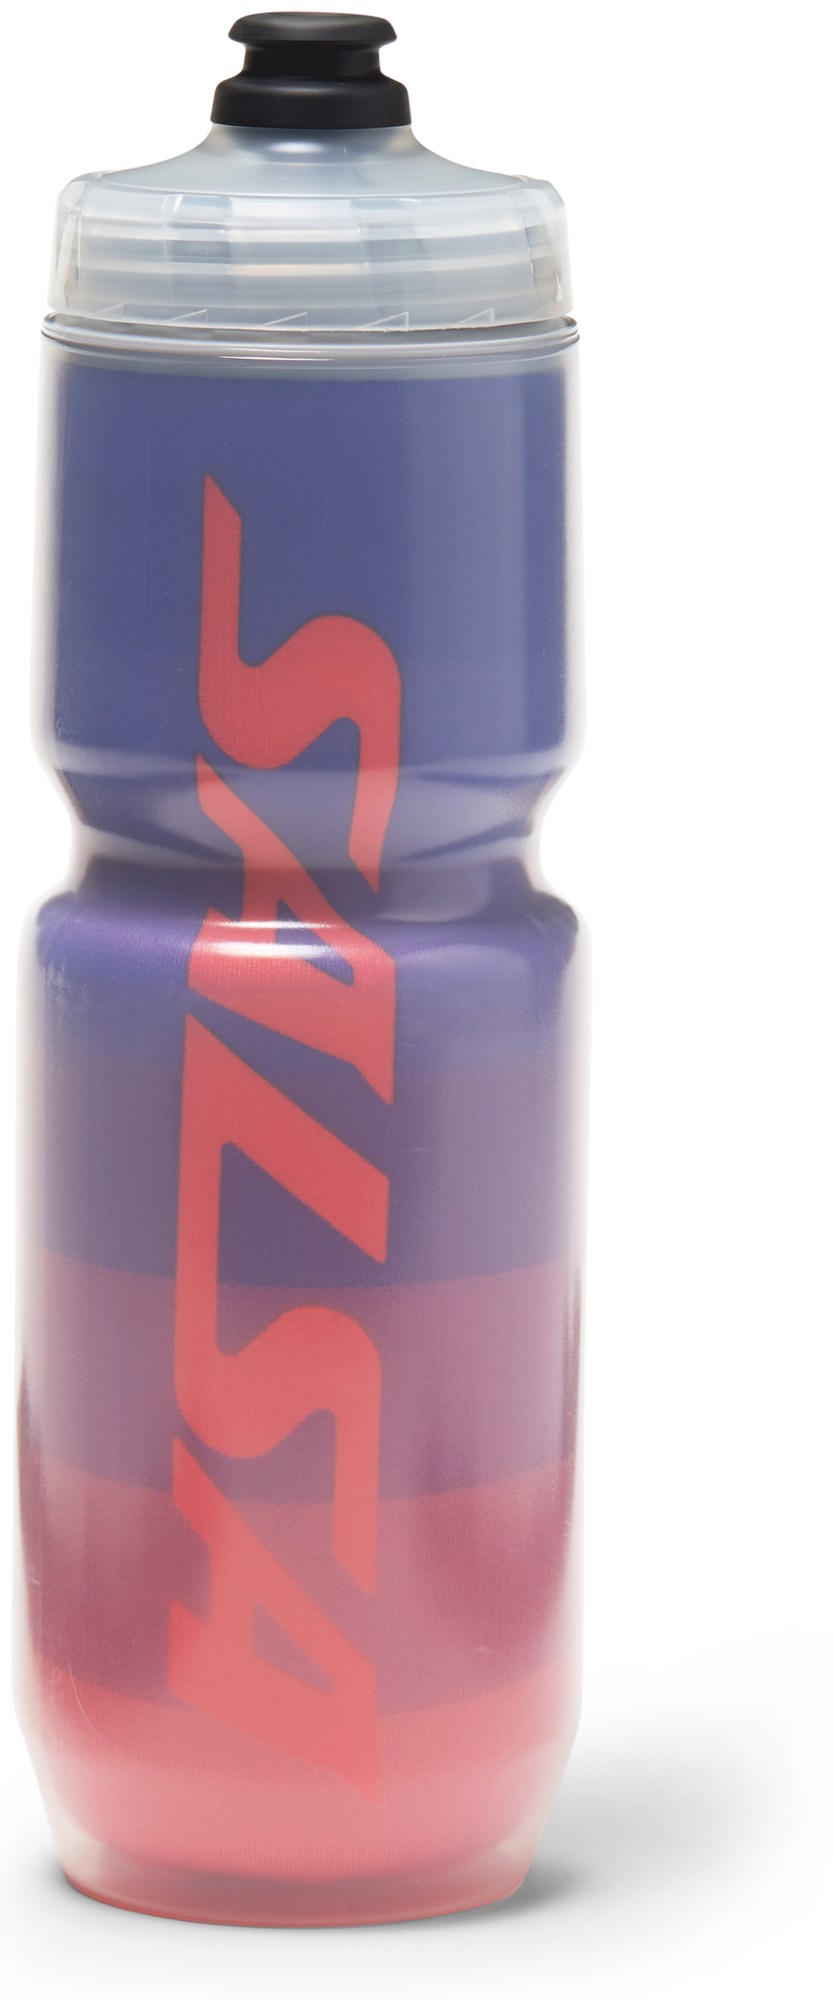 Изолированная бутылка для воды — 23 эт. унция Salsa, мультиколор